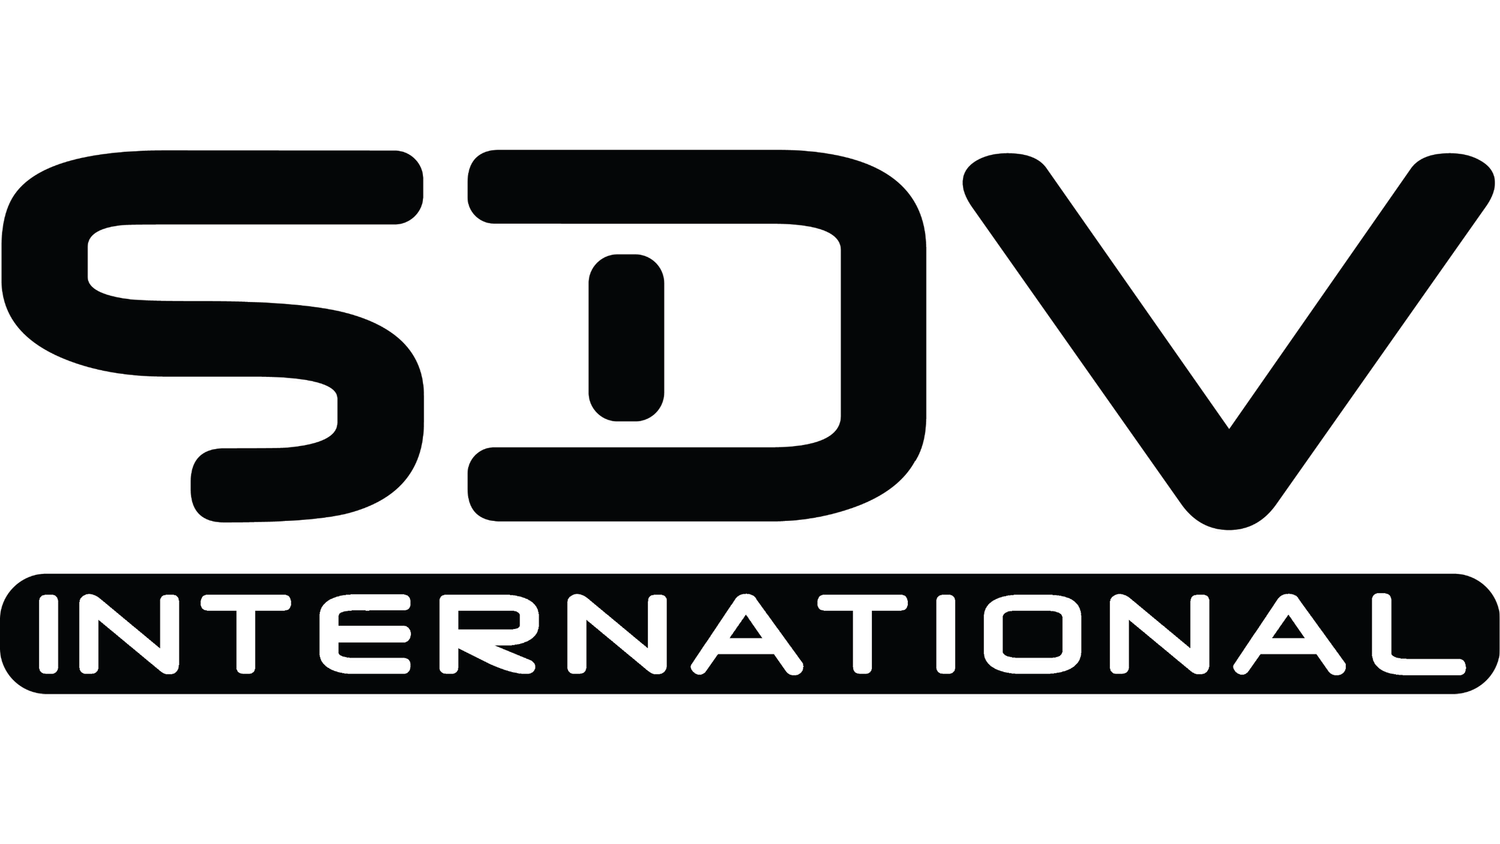 SDV INTERNATIONAL